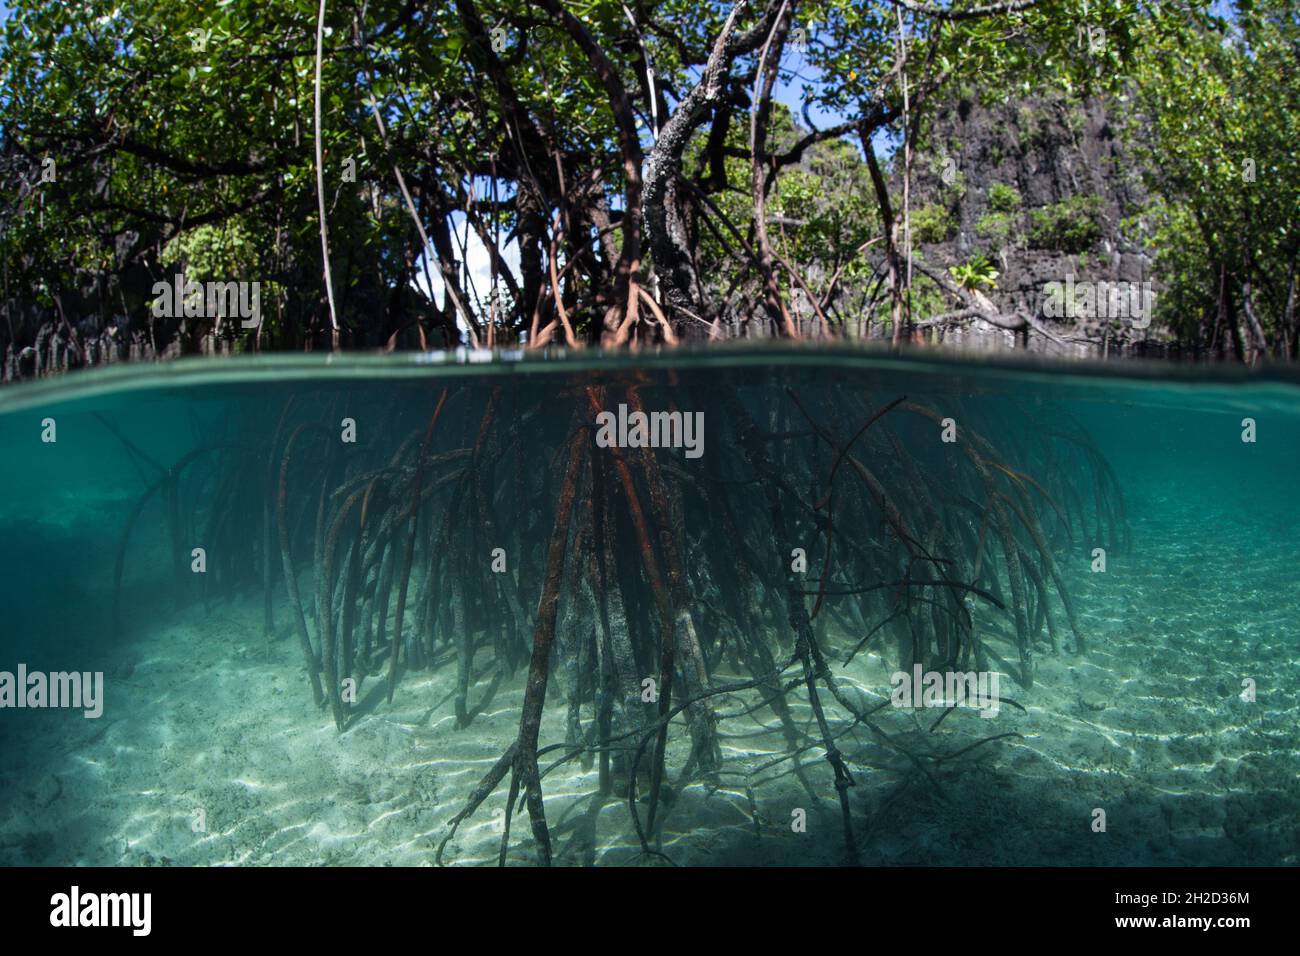 Le foreste di mangrovie in tutto il Raja Ampat, Indonesia, offrono habitat per molte specie. Quest'area ospita la più alta biodiversità marina della Terra. Foto Stock